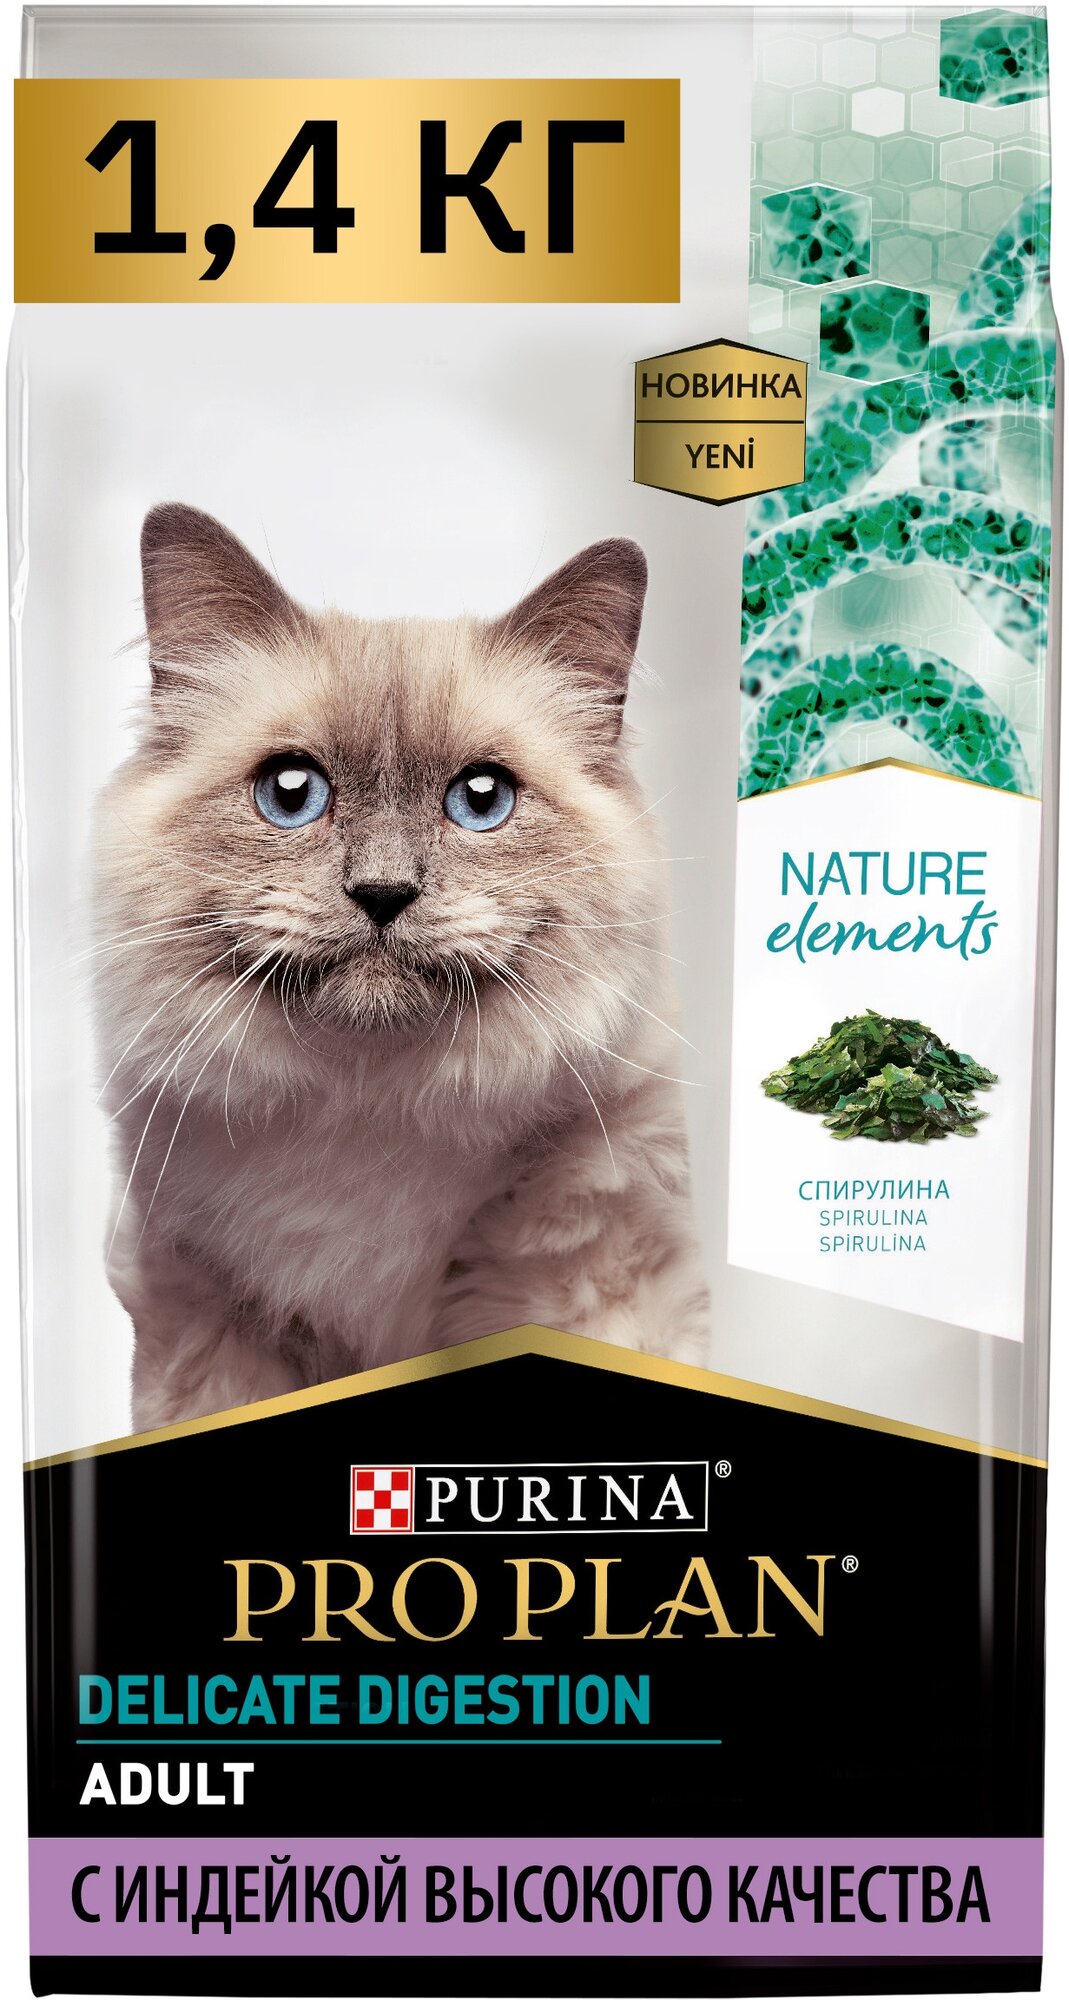 Сухой корм для кошек Pro Plan Nature Elements с чувствительным пищеварением или особыми предпочтениями в еде с индейкой